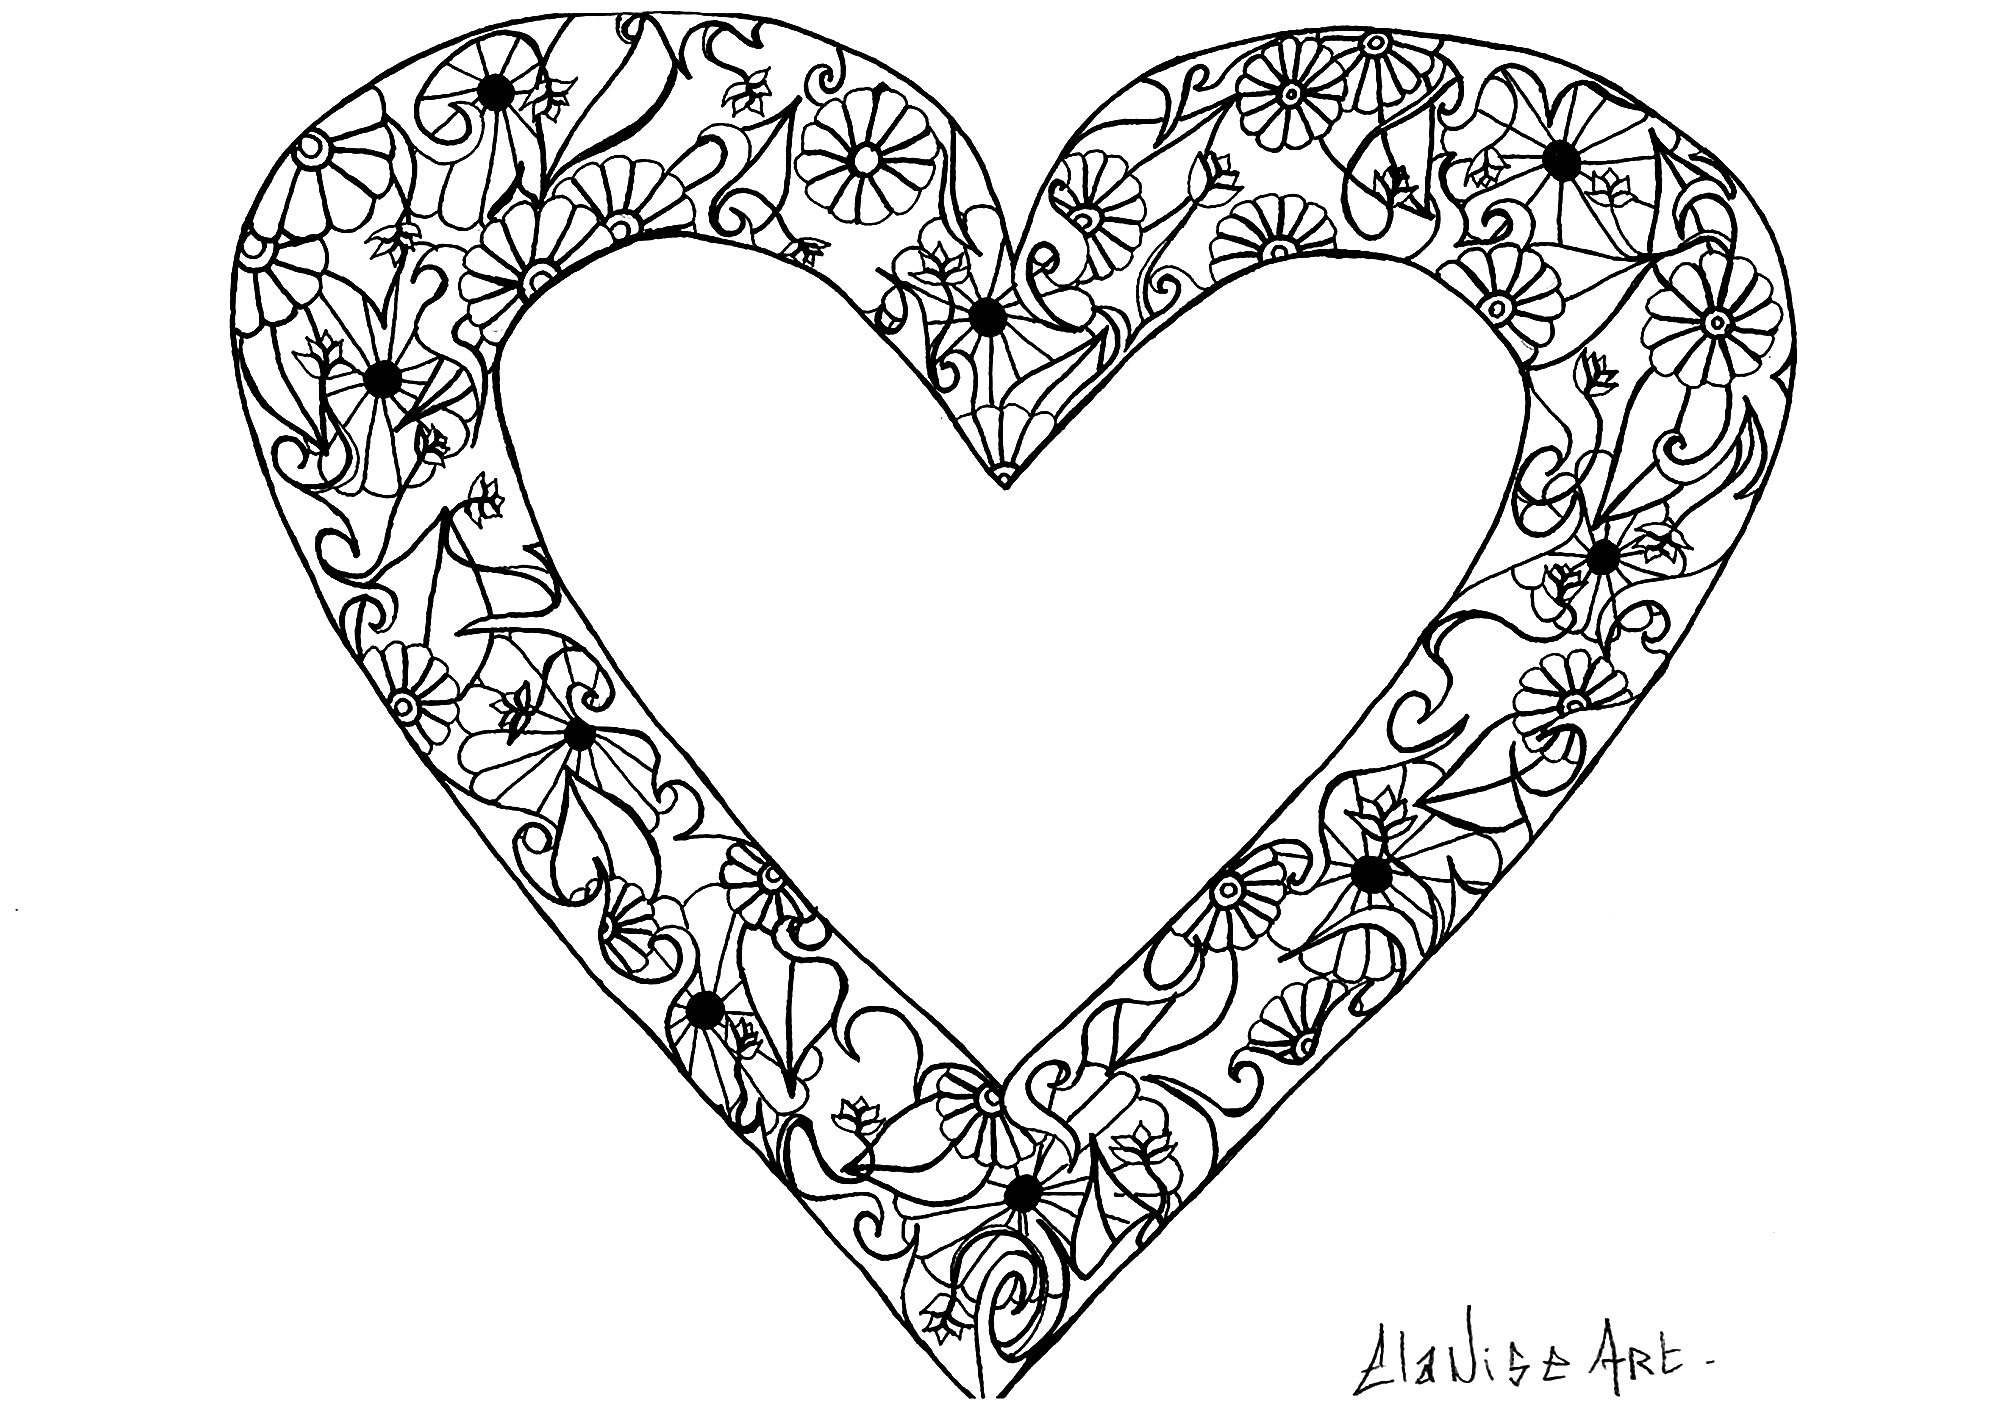 Disegno fresco con un cuore contenente semplici fiori e foglie, Artista : Elanise Art